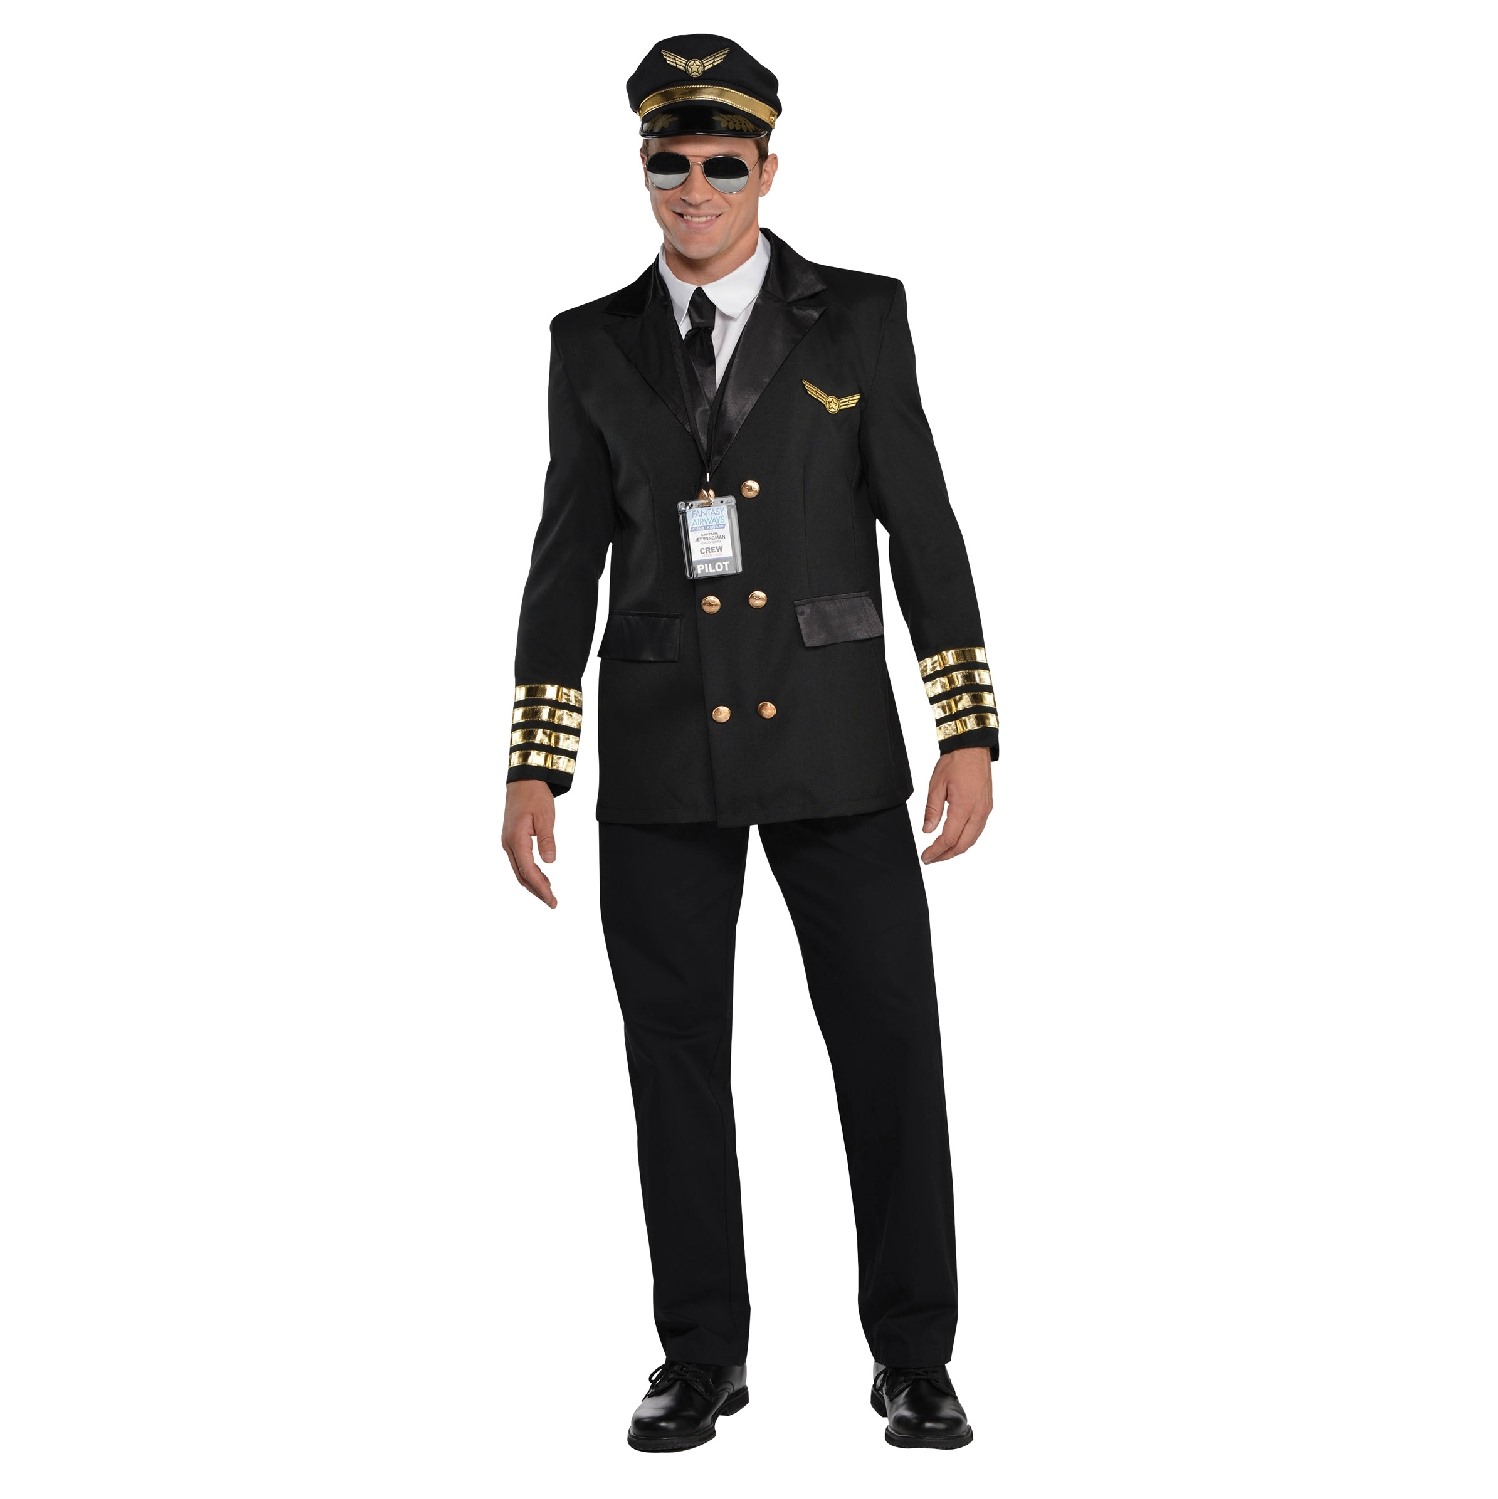 Disfraz de piloto de avión para niño por 22,00 €